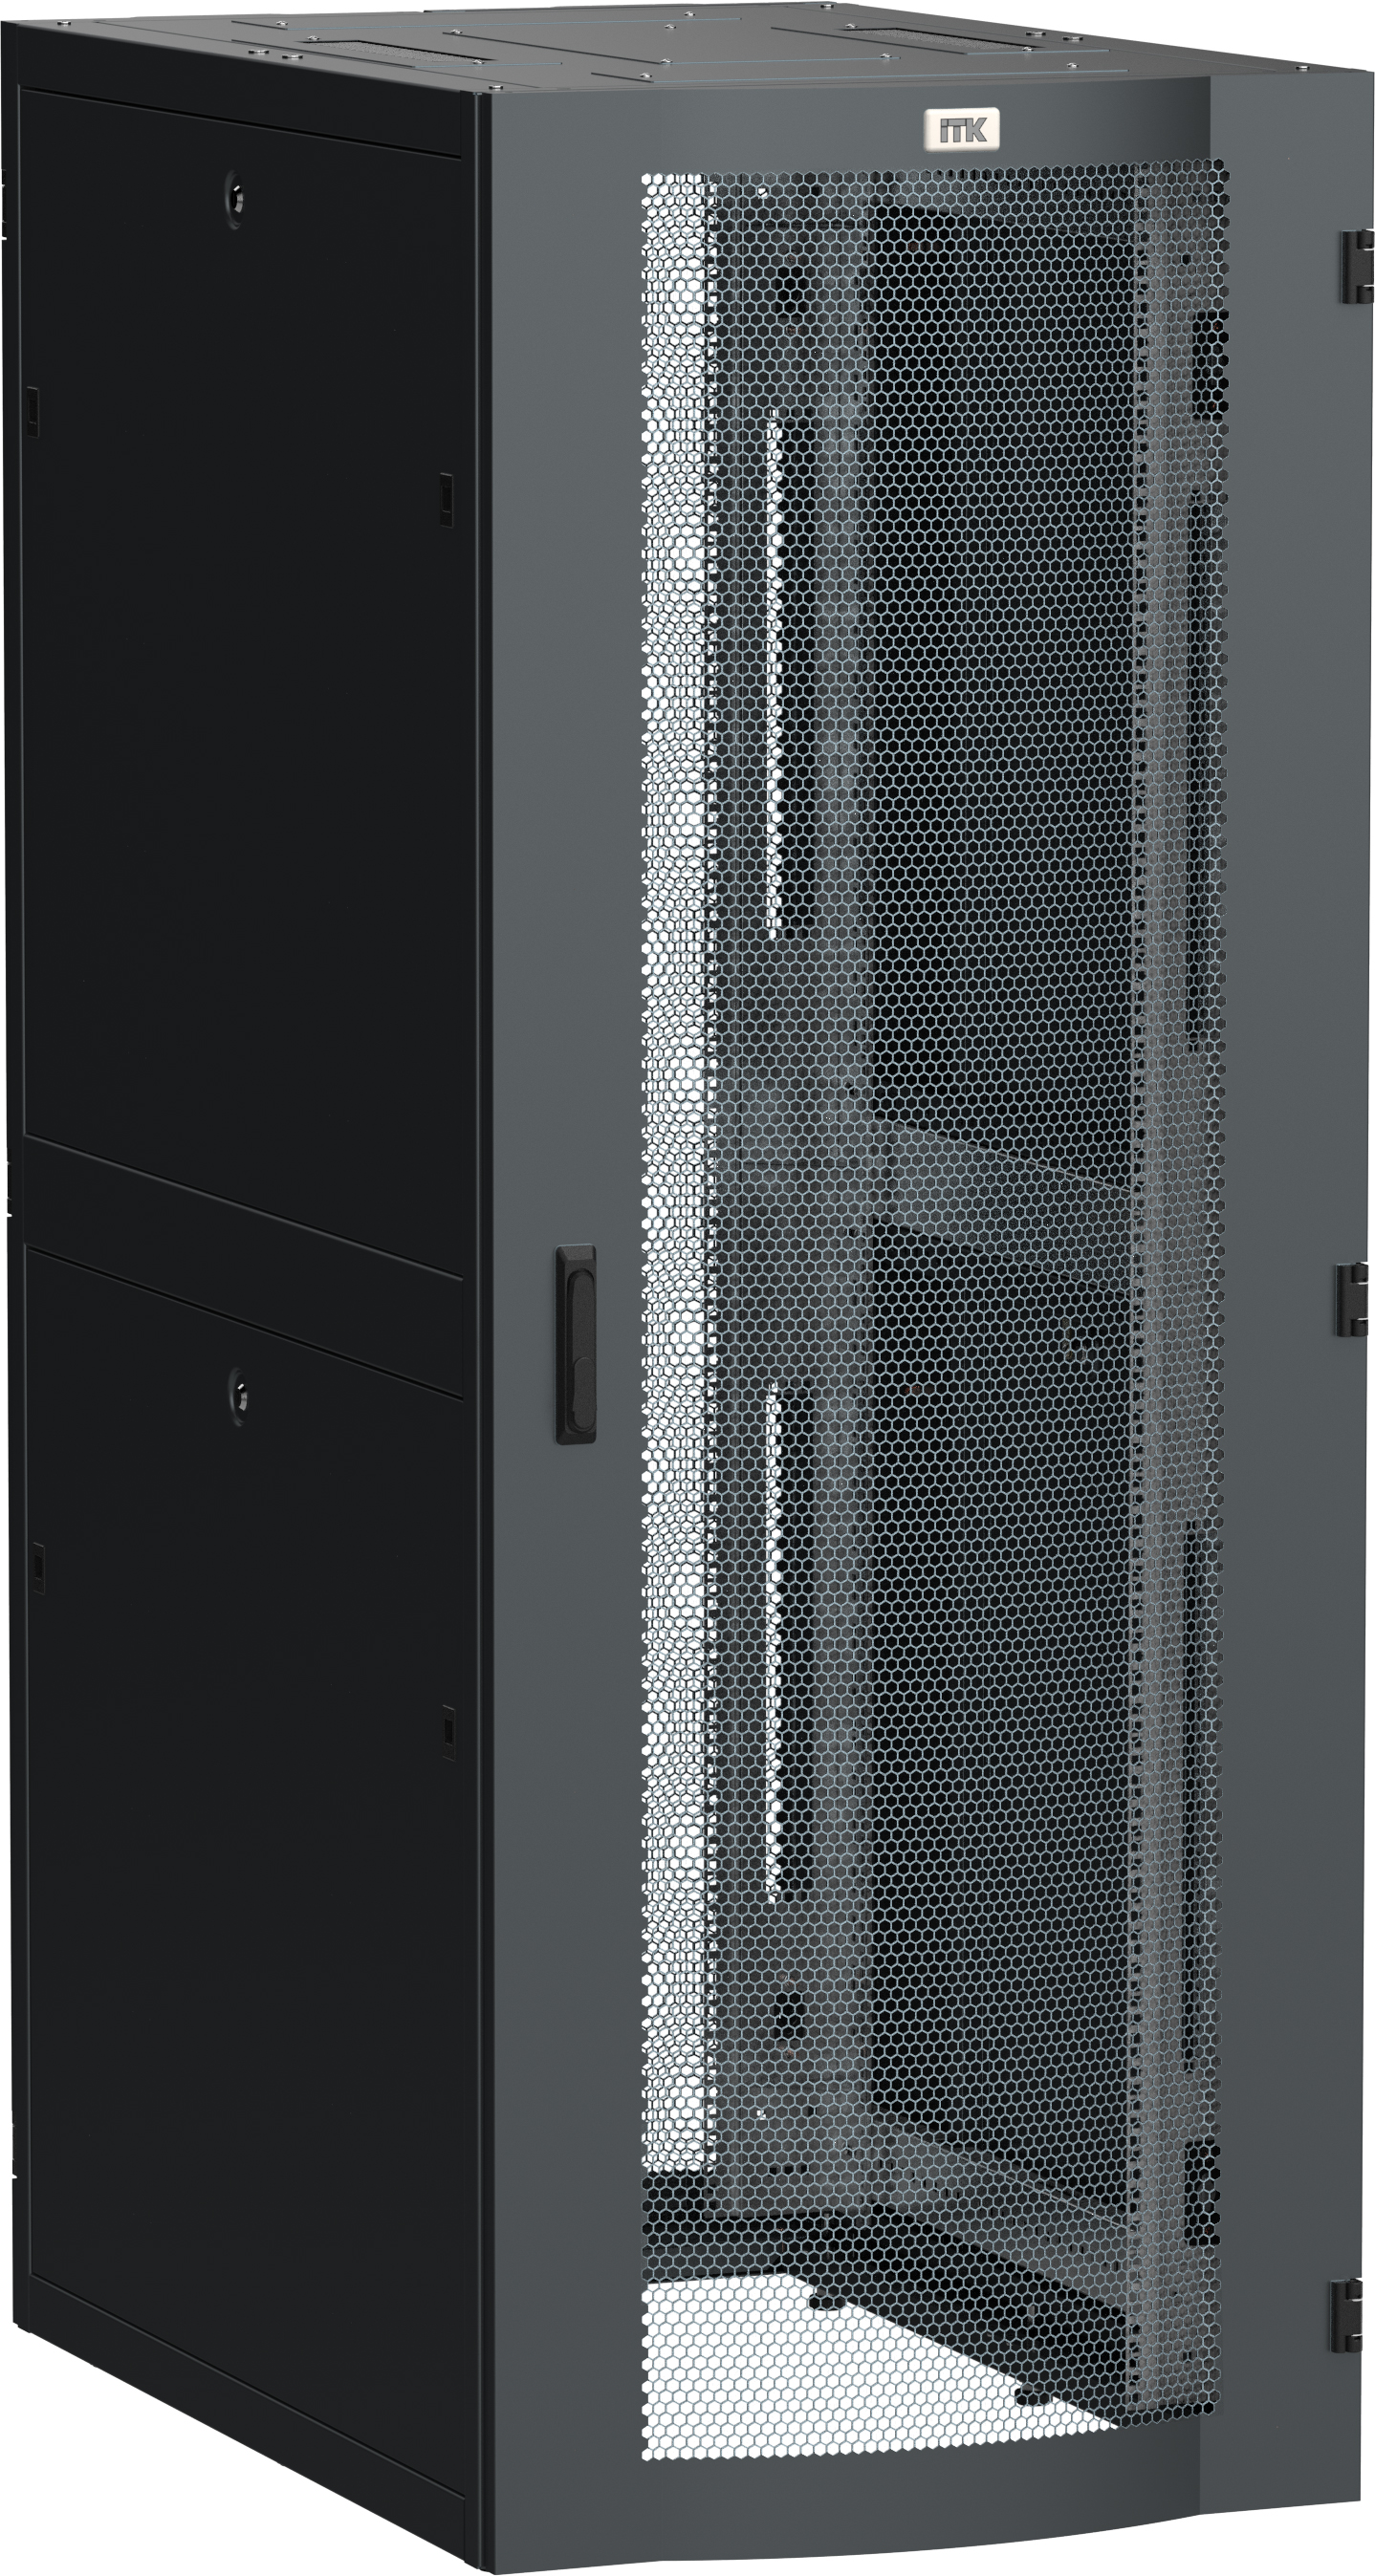 ITK LINEA S Шкаф серверный 19" 33U 800х1200мм передняя дверь двухстворчатая перфорированная задняя дверь перфорированная черный RAL 9005